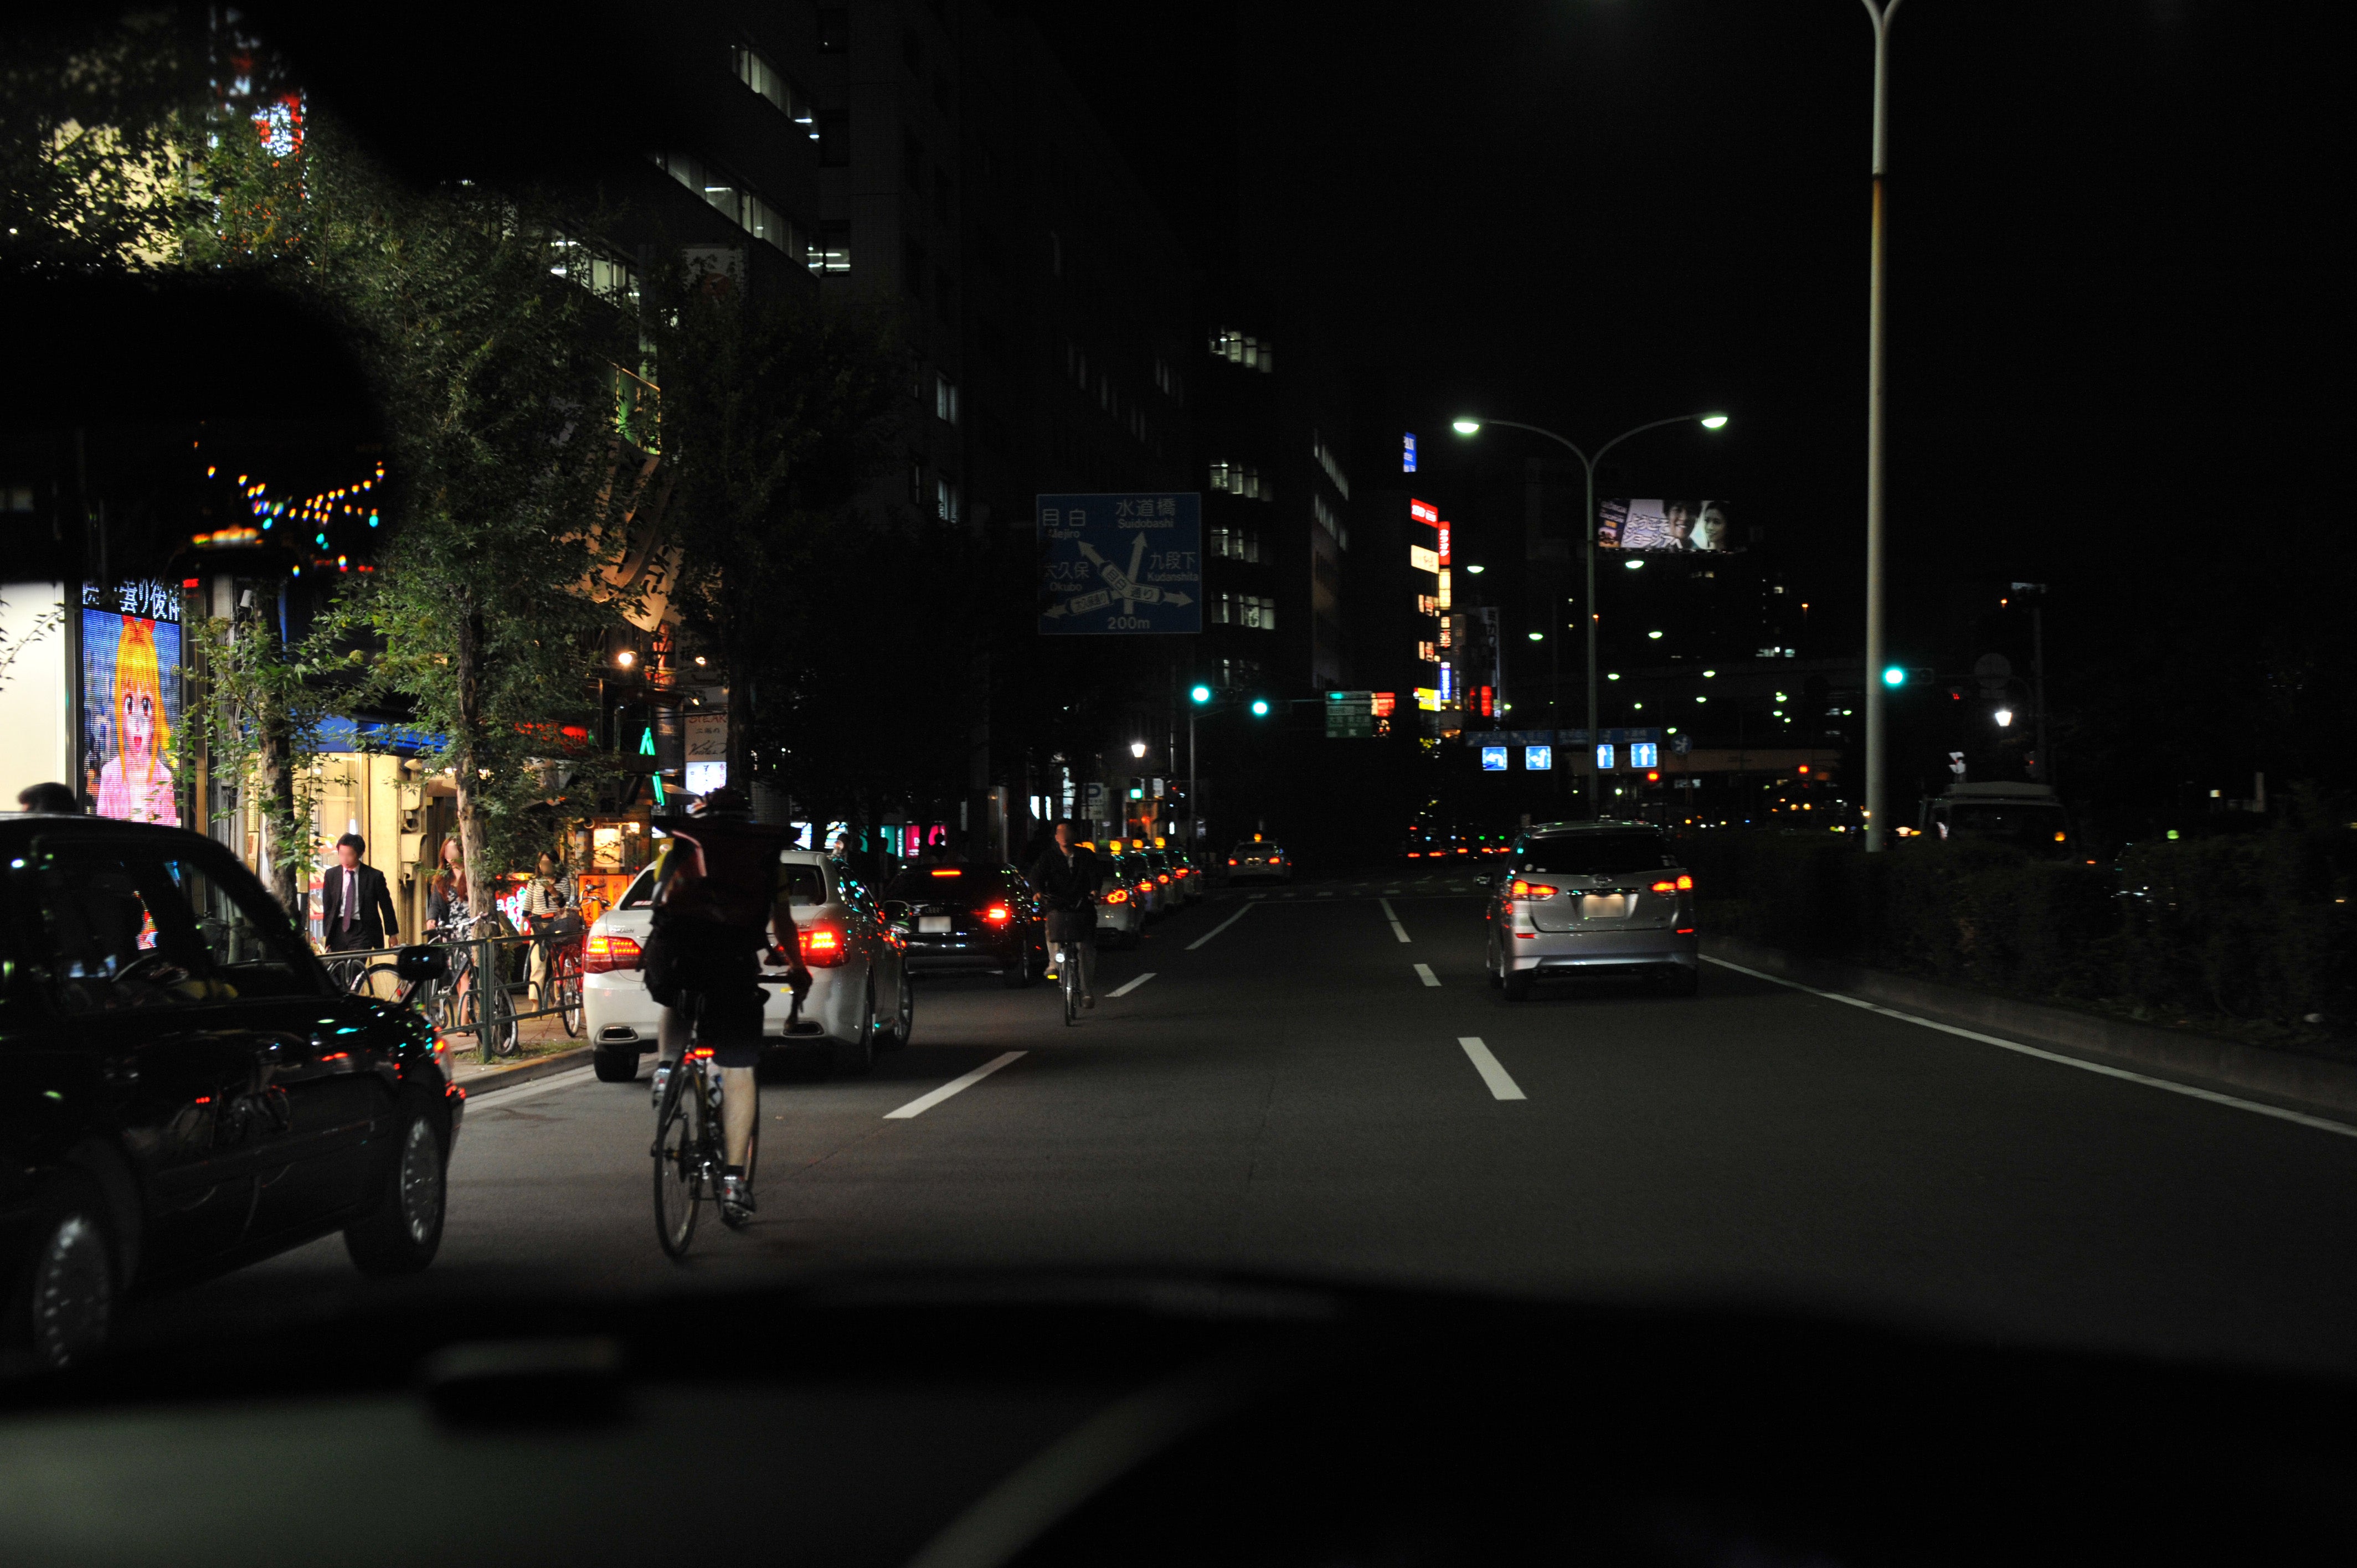 画像ALT:道路の右側を逆走する自転車